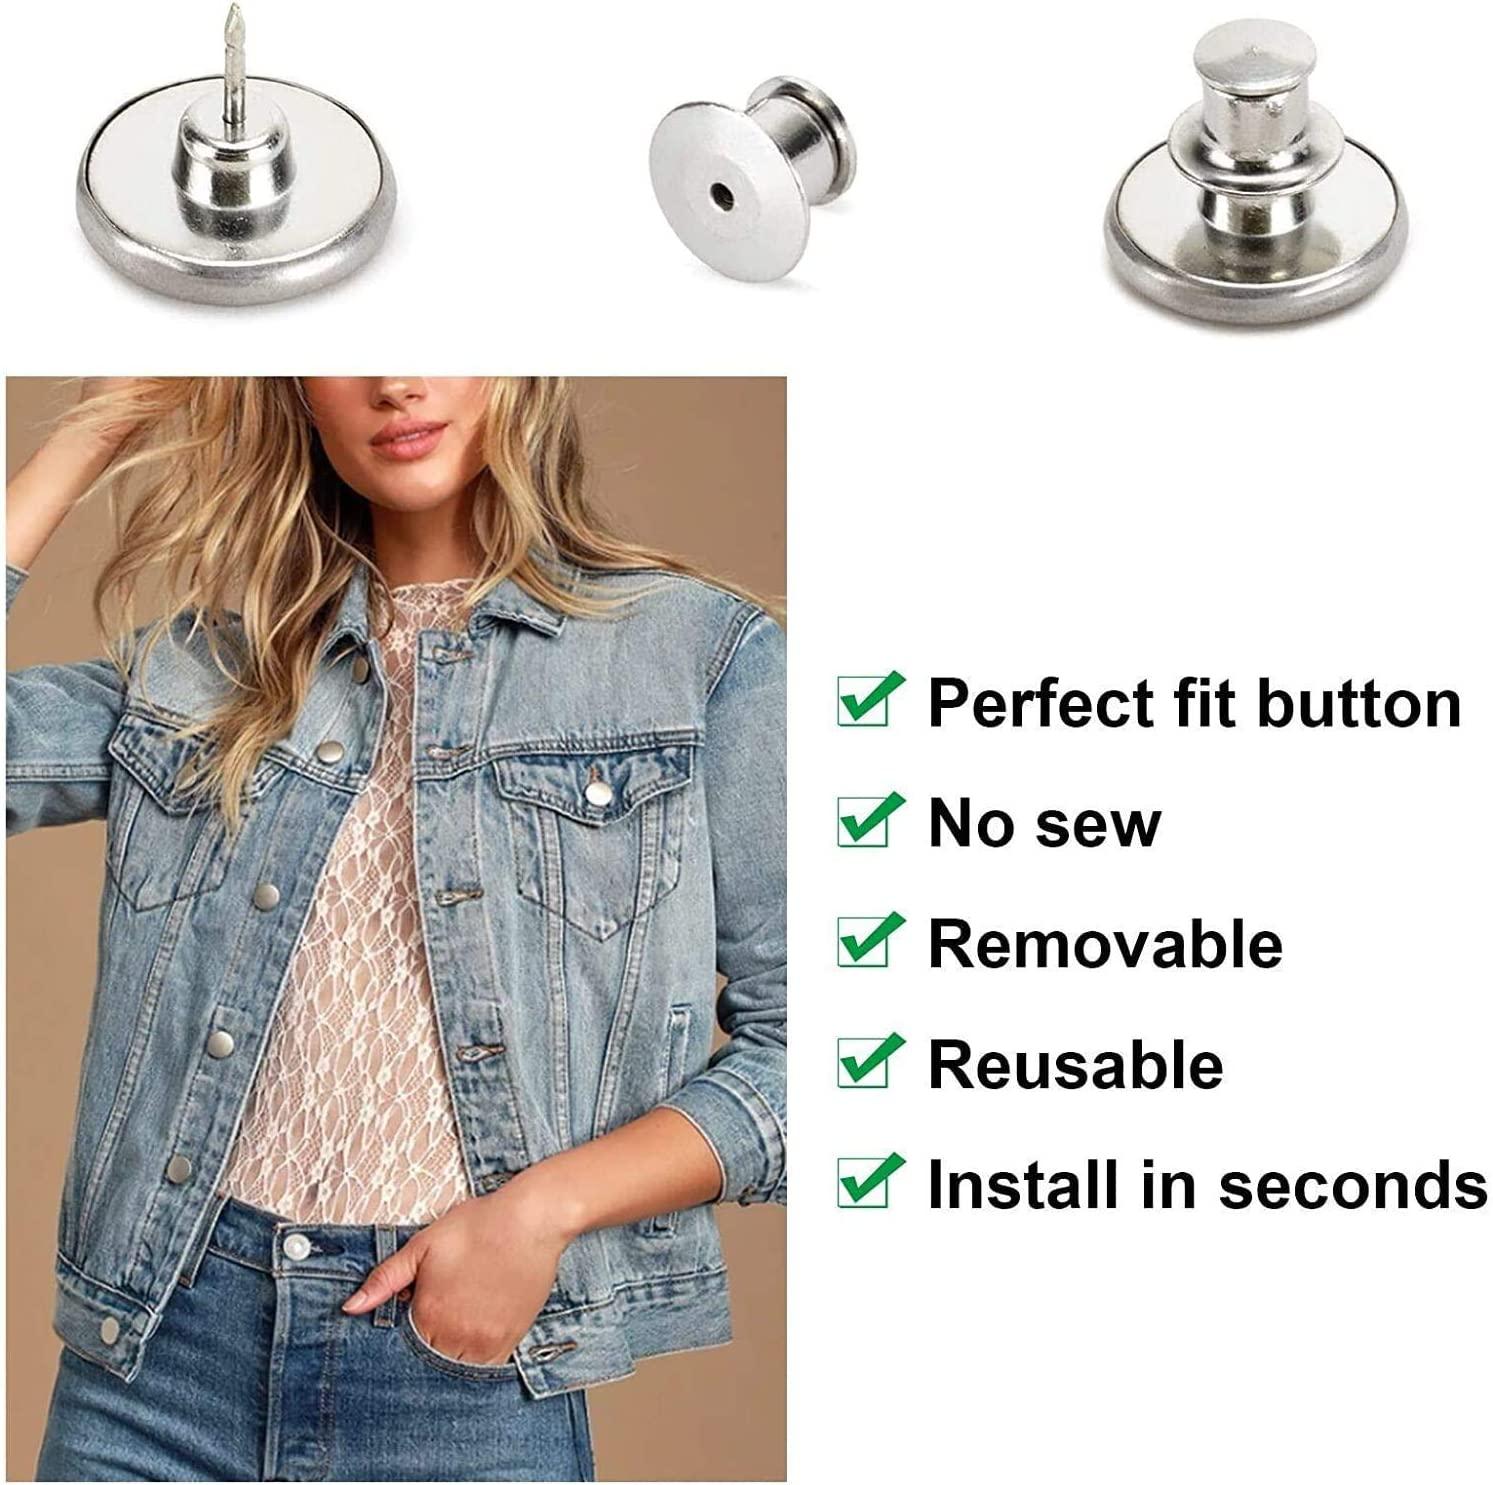 8pcs Jean Button No Sew Instant Button 17mm Detachable Reusable Jean Replacement Buttons for Jeans,Jackets, Hats, Suits, Pants, Bags